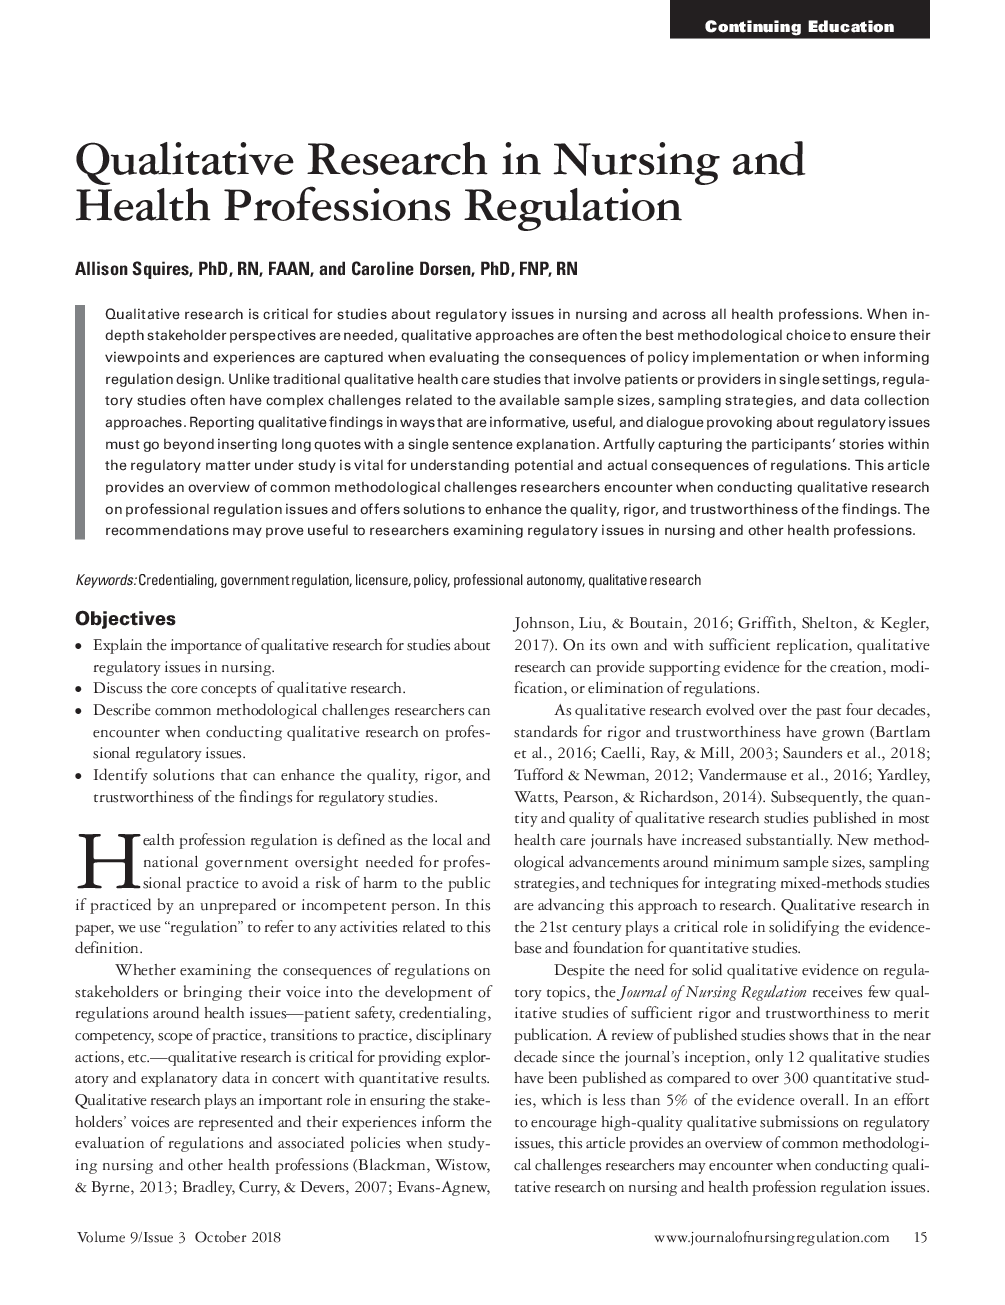 تحقیقات کیفی در مقررات پرستاری و بهداشت حرفه ای